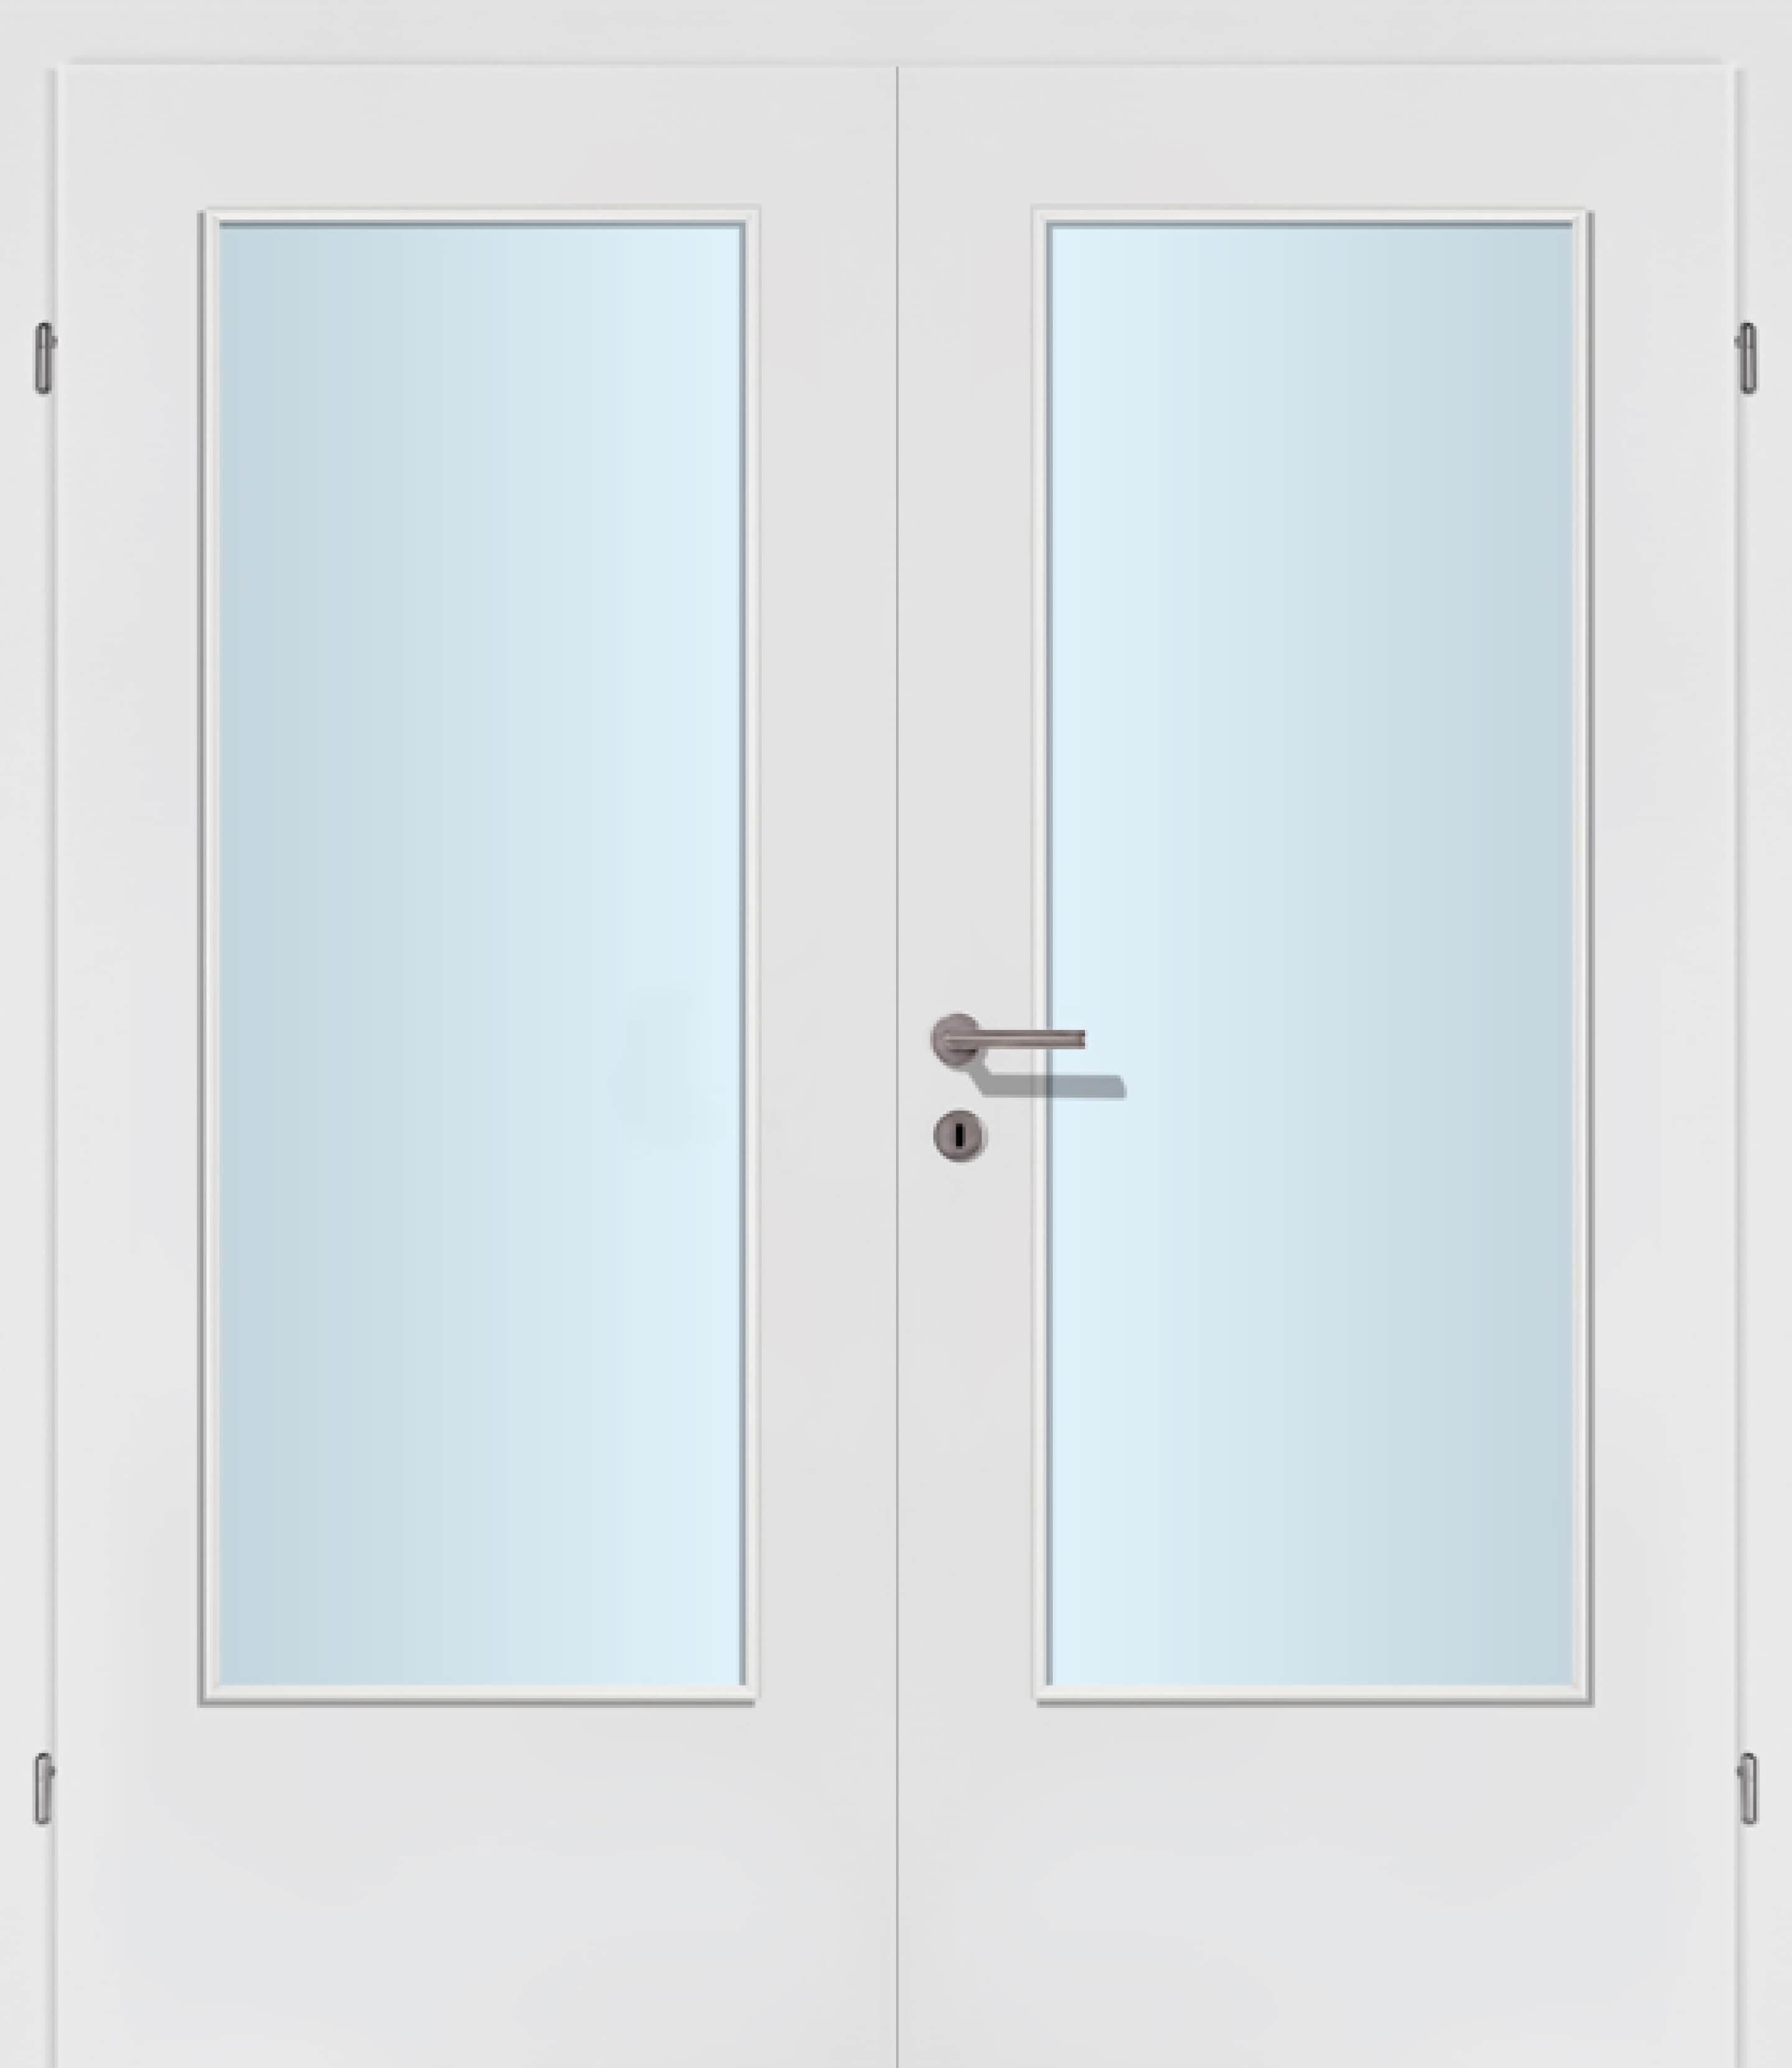 Exklusiv weiss Innentür Inkl. Zarge (Türrahmen) Doppeltüre Inkl. Glaslichte C